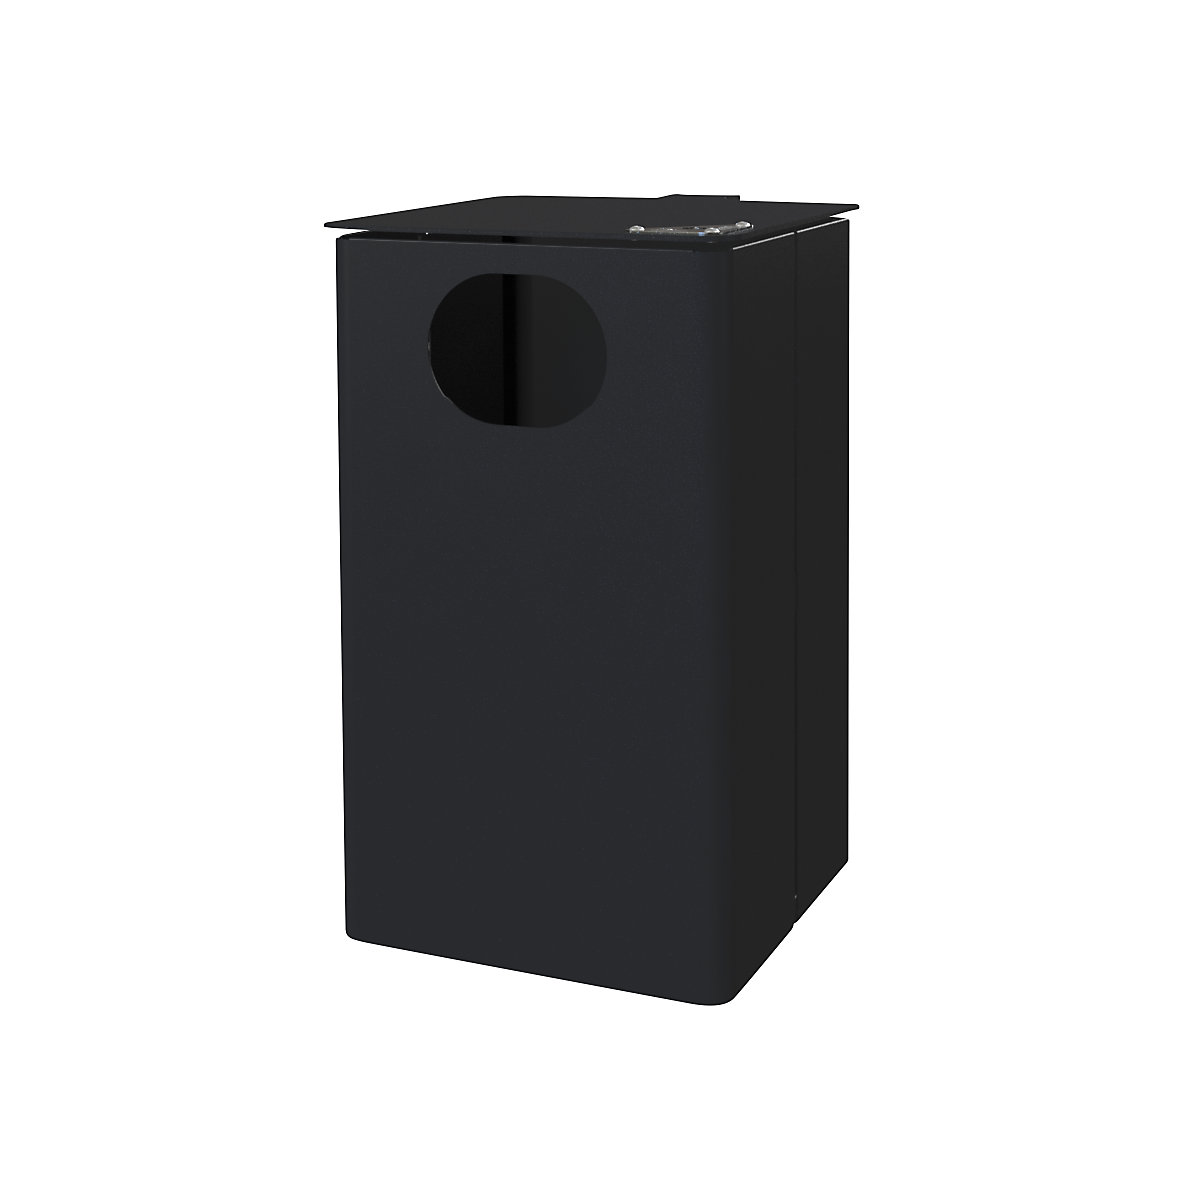 Außen-Abfallbehälter mit Ascher, Volumen 35 l, HxBxT 537 x 325 x 388 mm, schwarzgrau